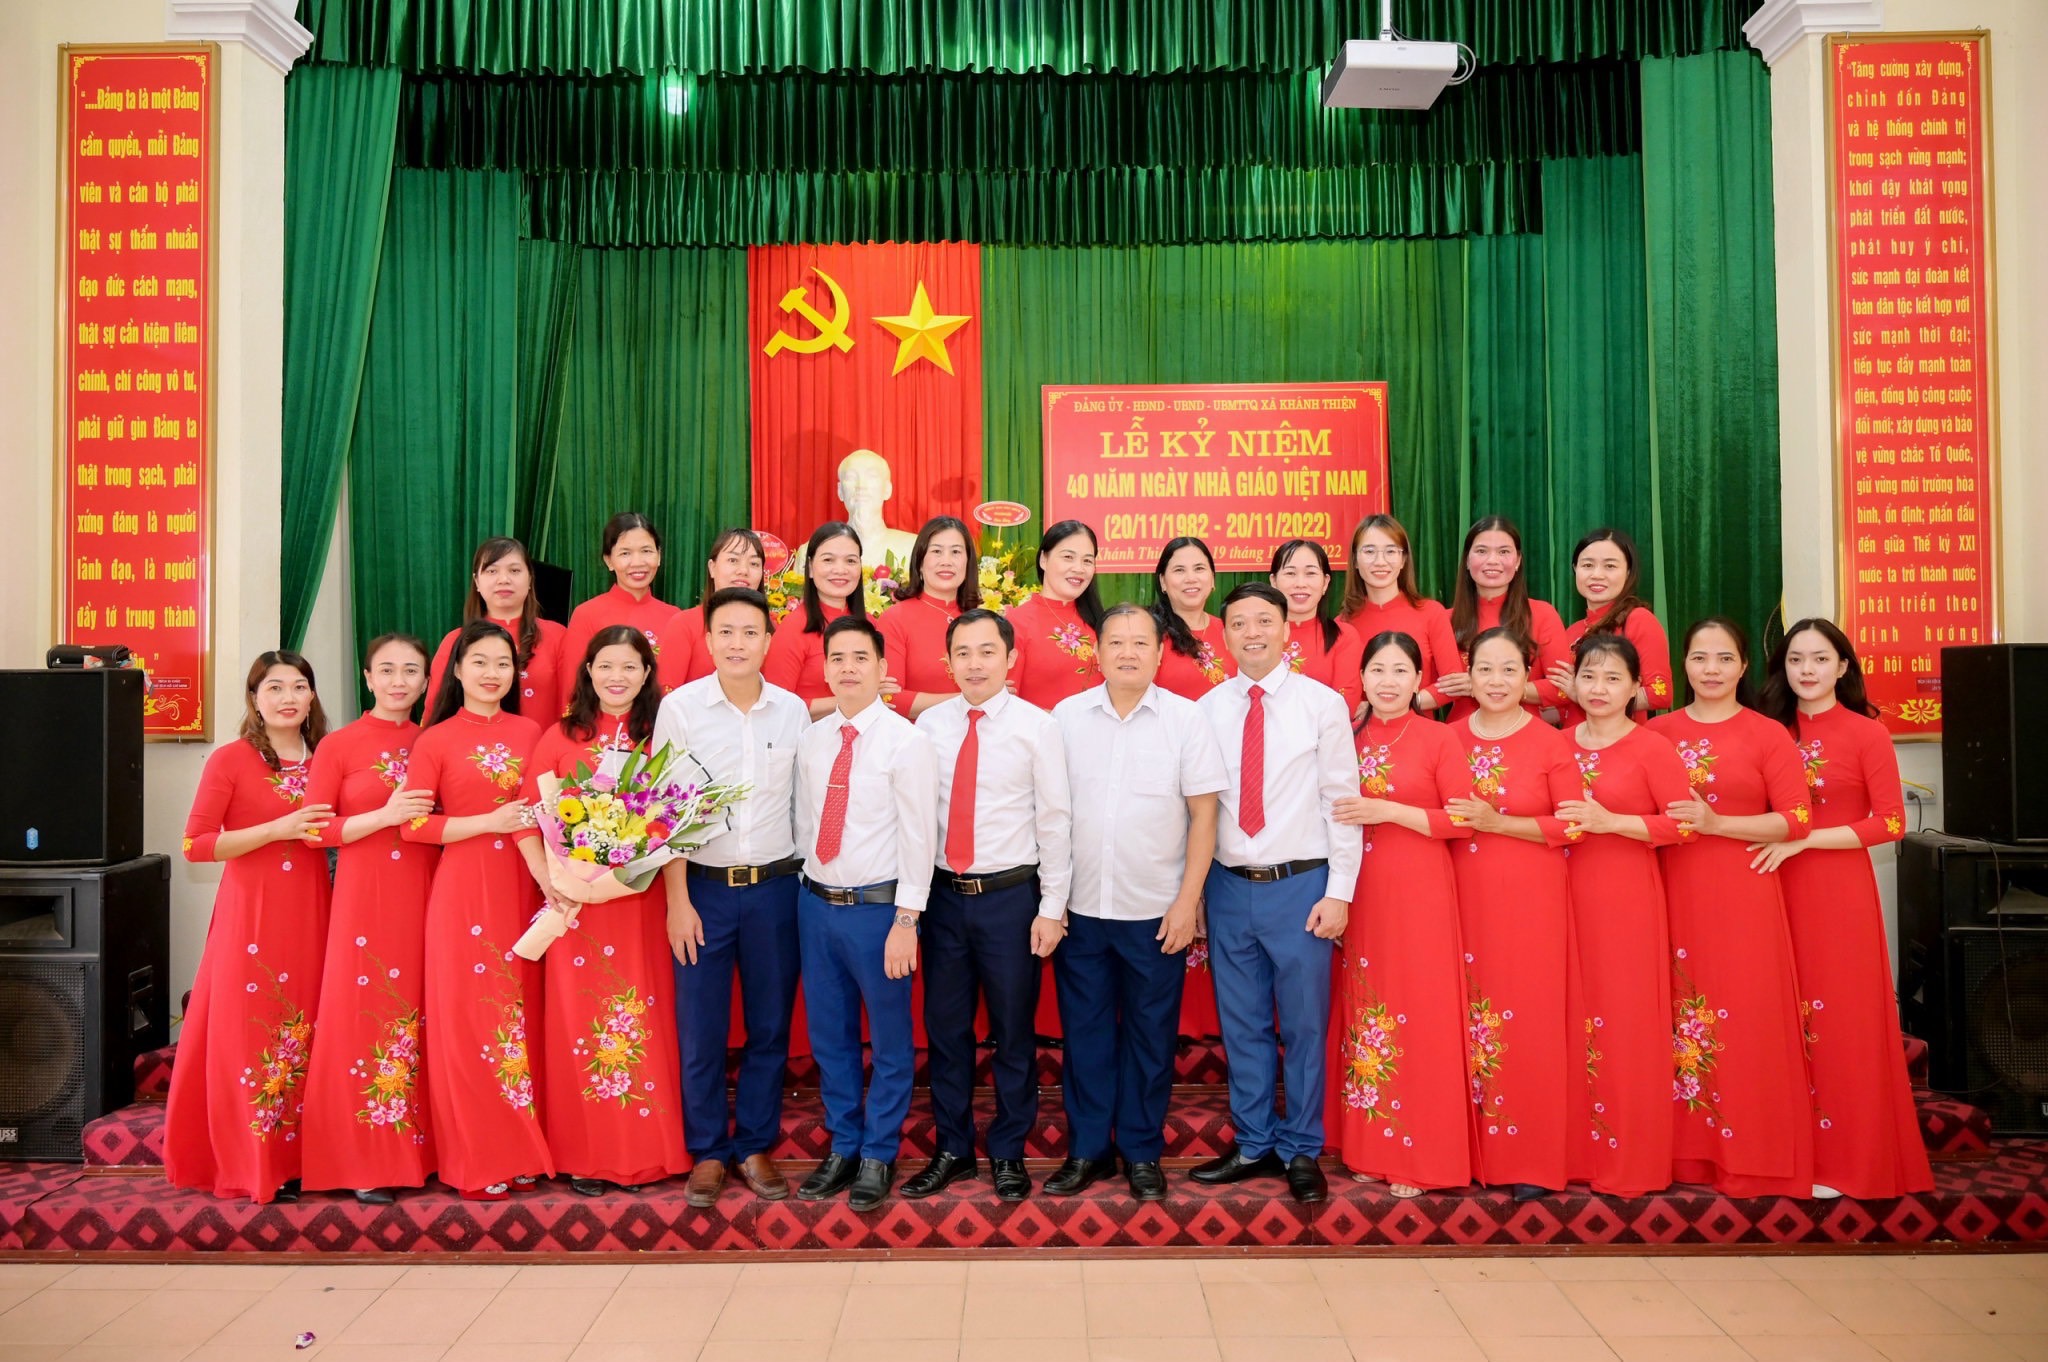 Lễ kỷ niệm 40 năm ngày nhà giáo Việt Nam (20/11/1982 - 20/11/2022)